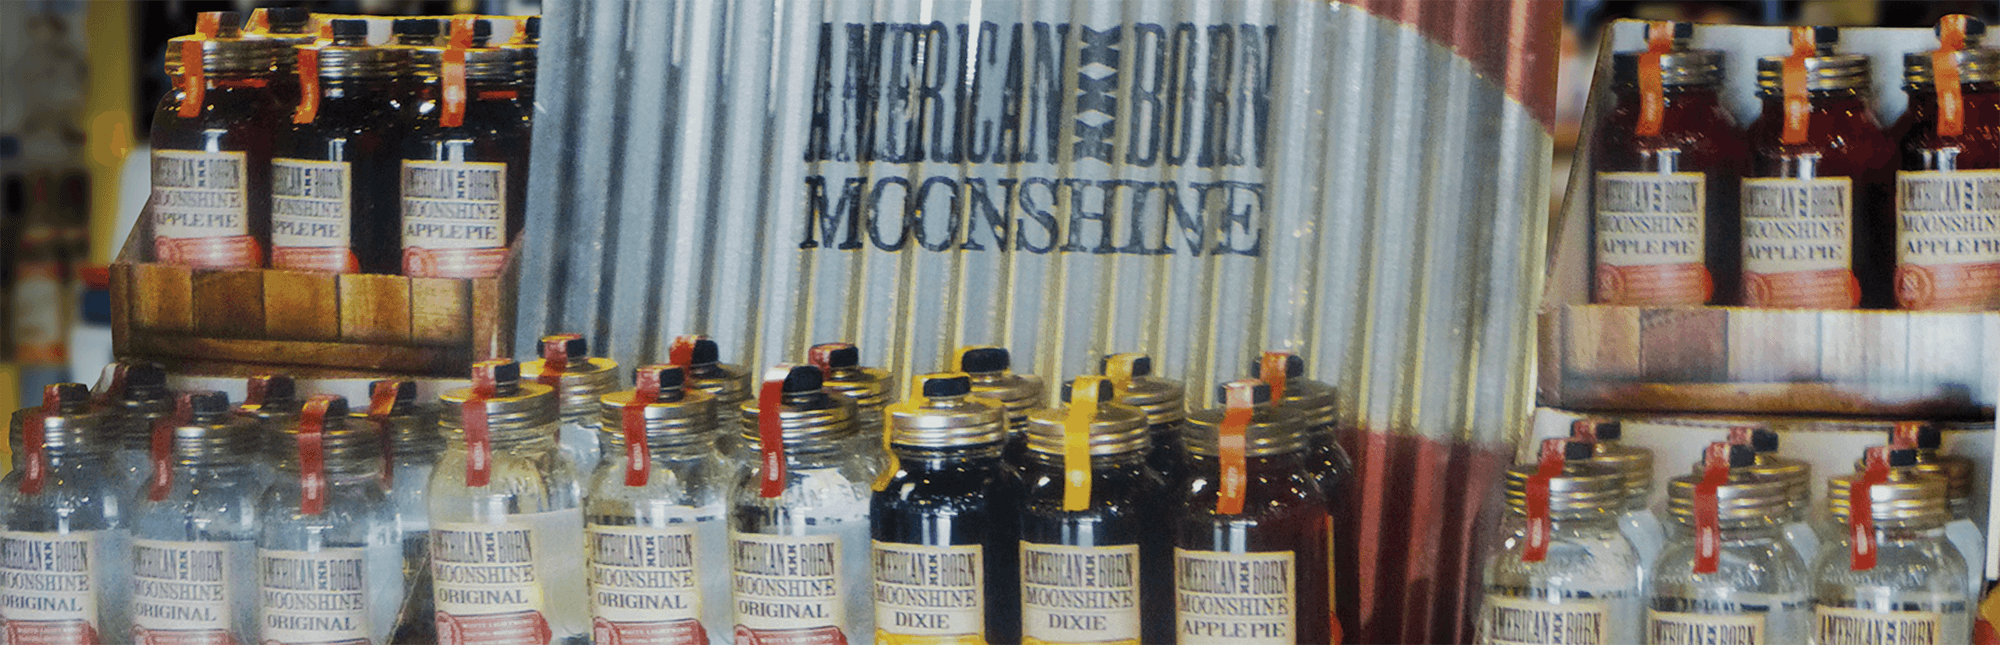 american born moonshine floor display